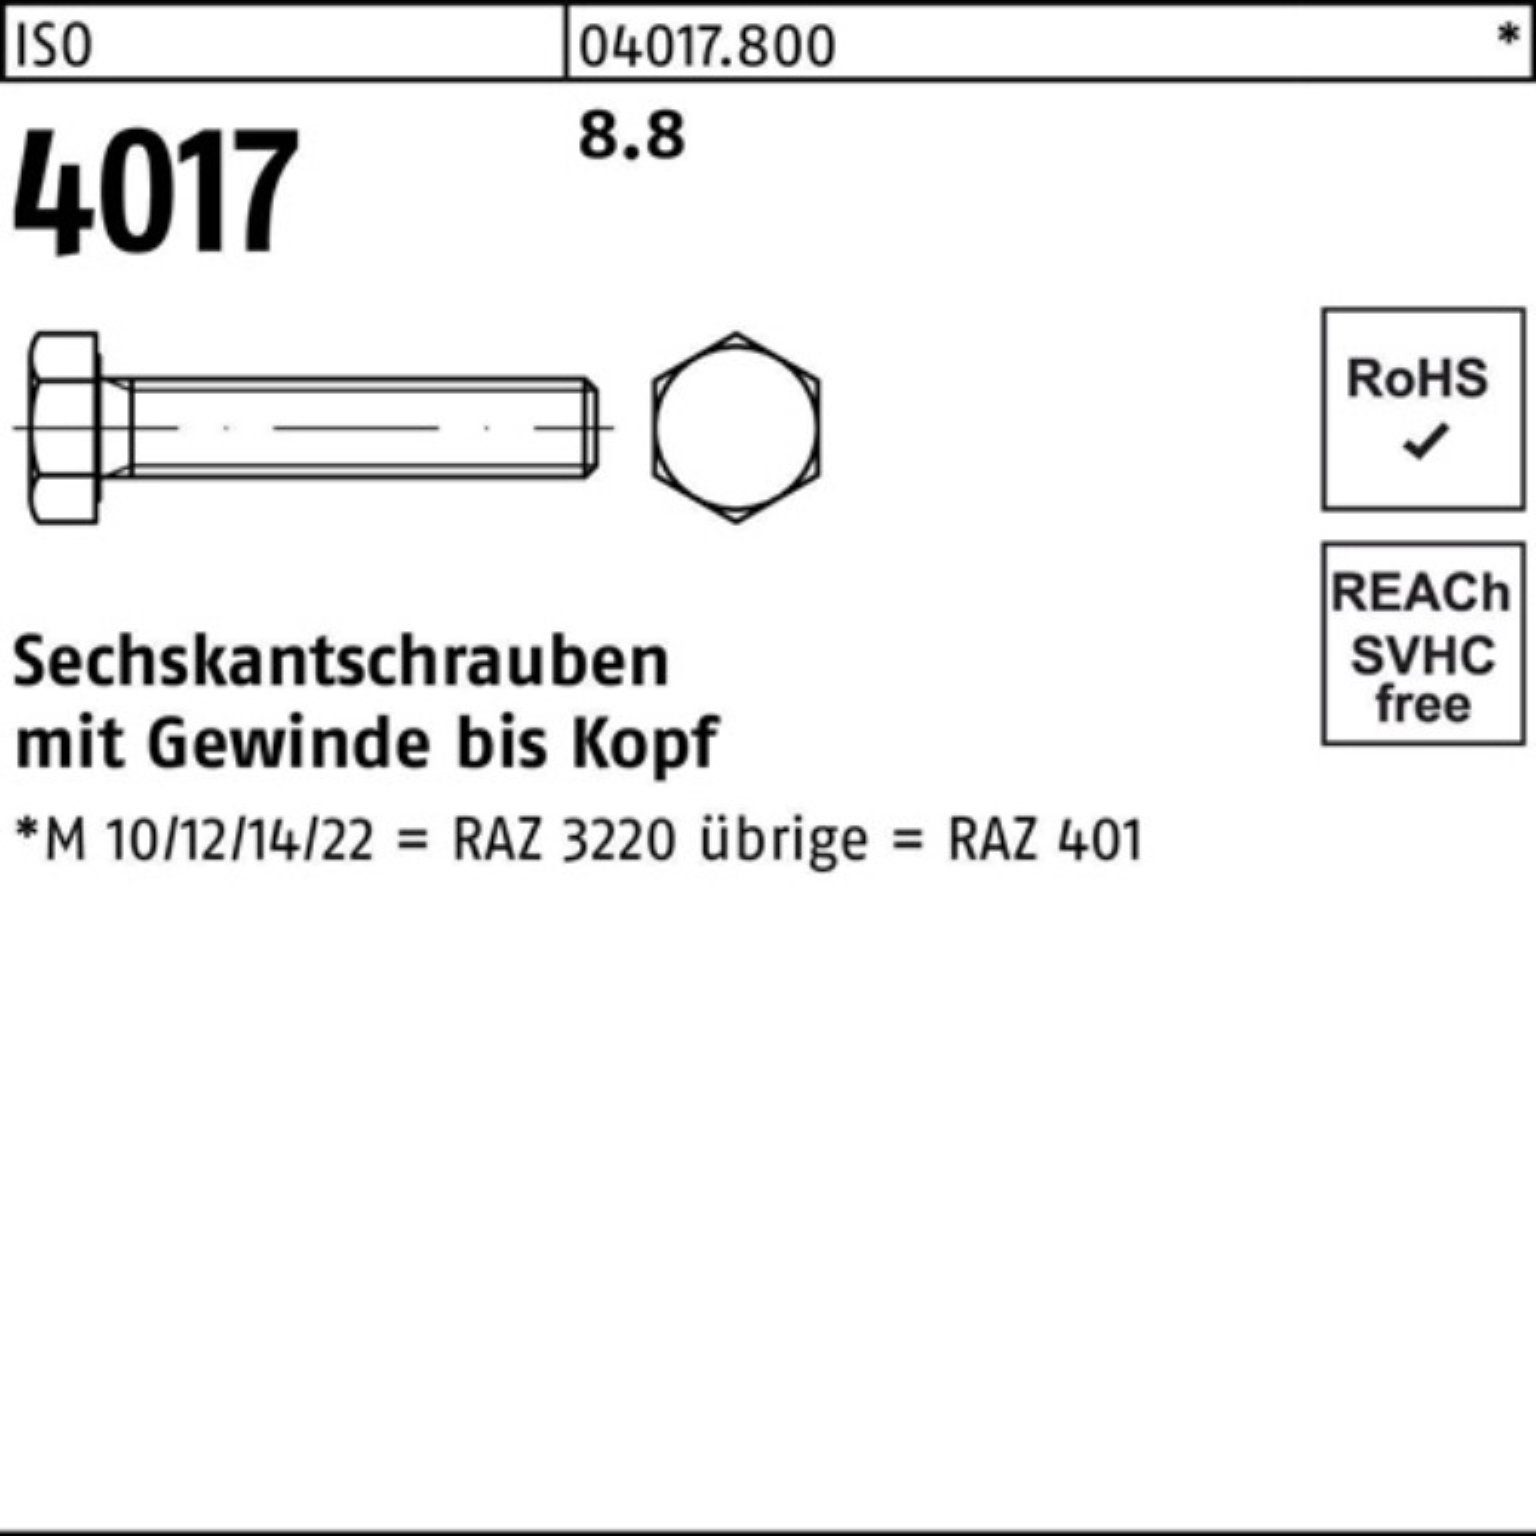 4017 ISO 8.8 Bufab Sechskantschraube M3x Sechskantschraube 500 VG Stück 16 ISO Pack 401 500er